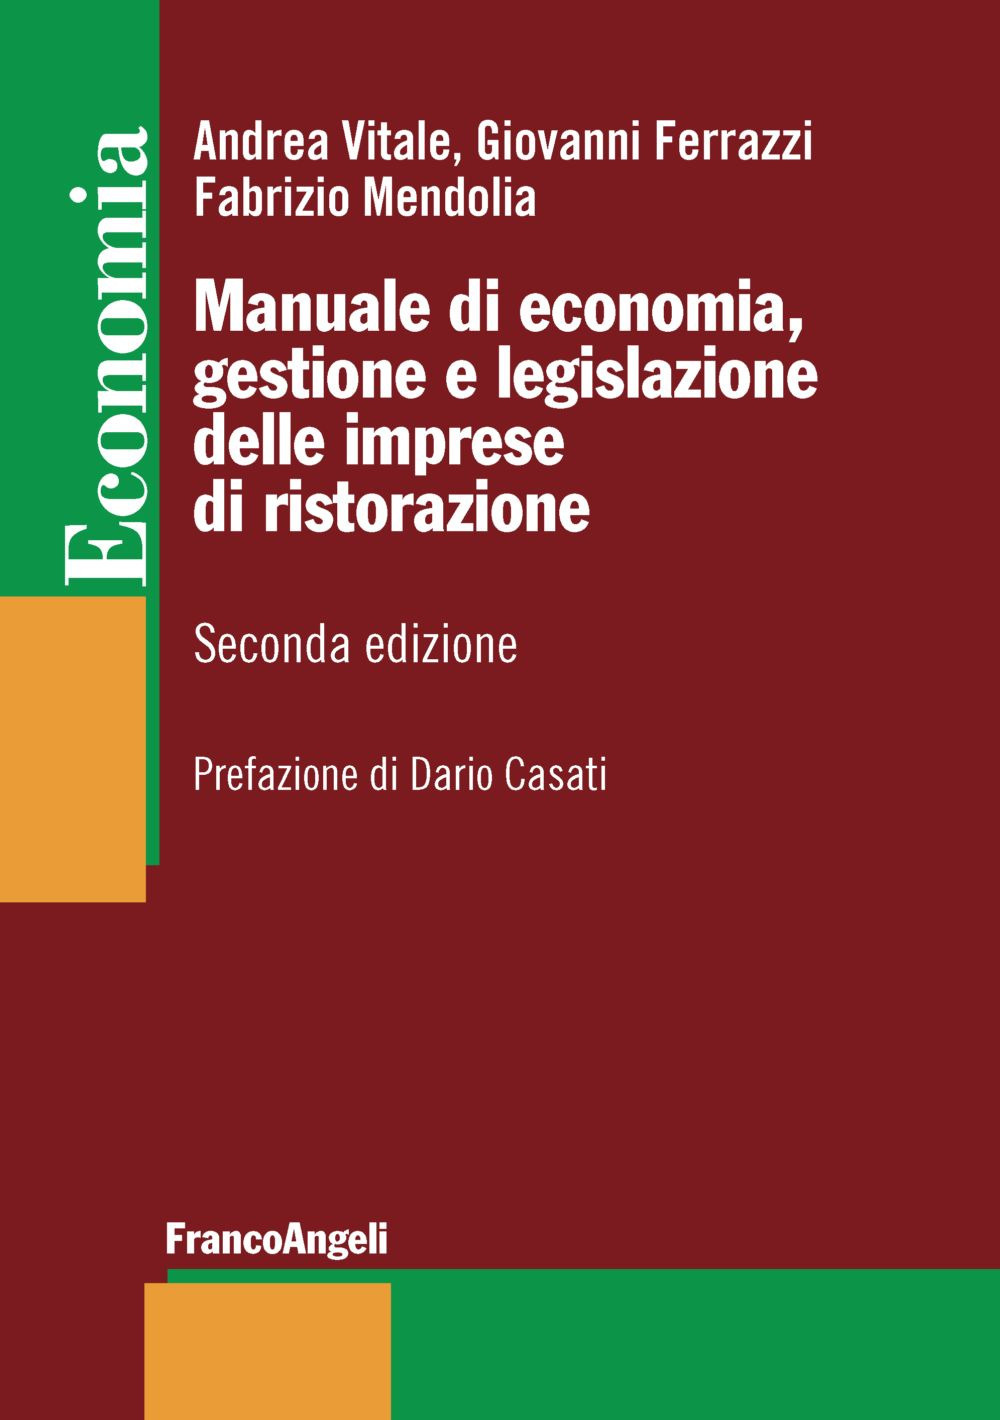 Image of Manuale di economia, gestione e legislazione delle imprese di ristorazione